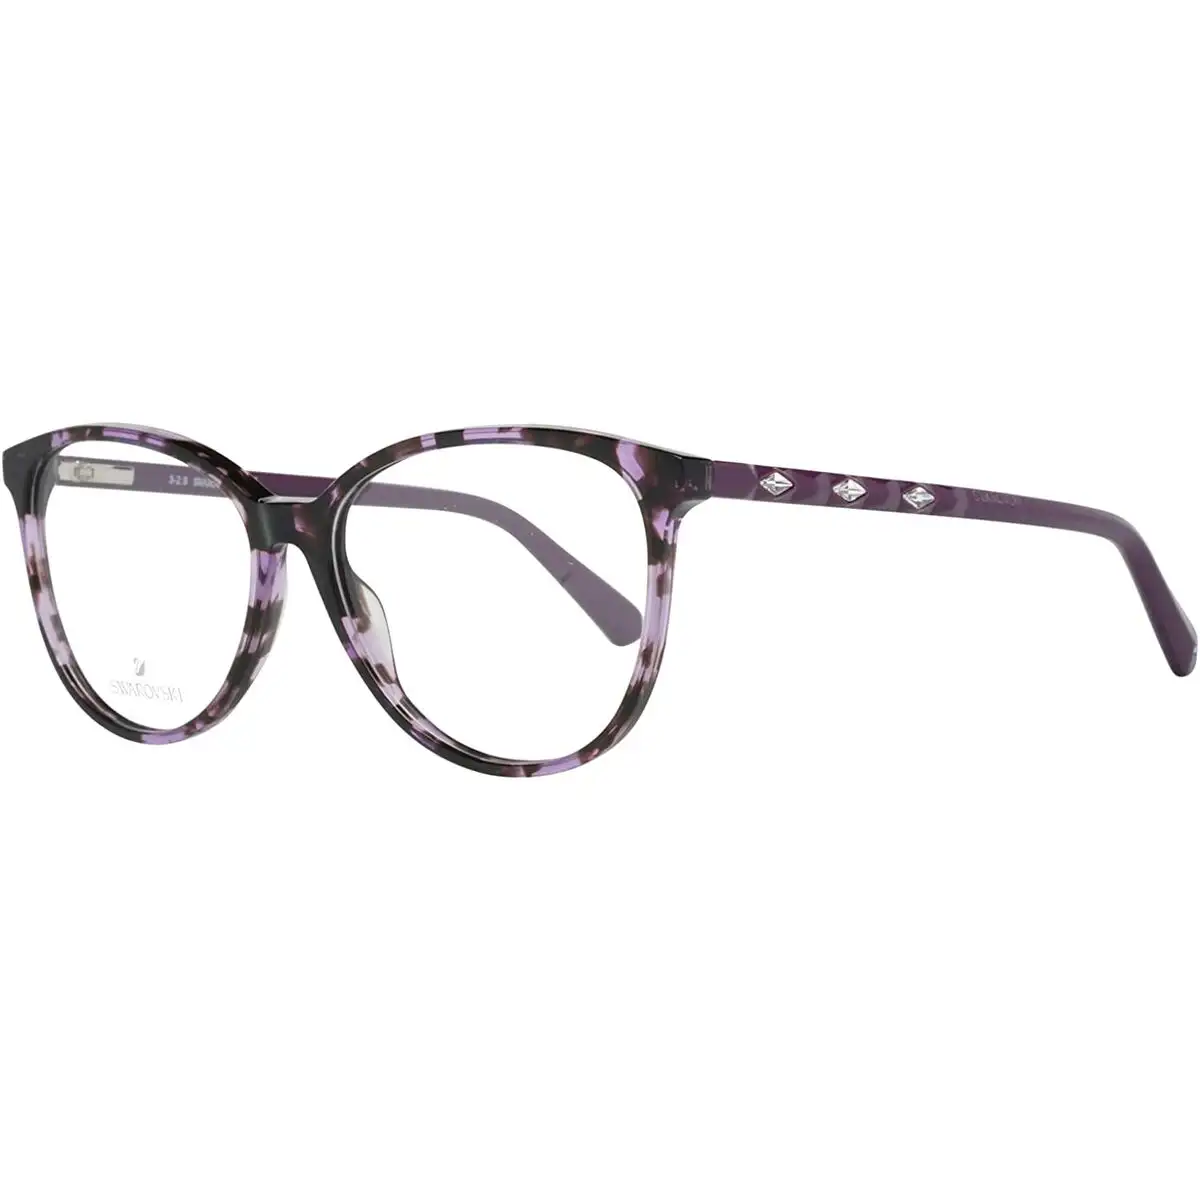 Monture de lunettes femme swarovski sk5301 54055_1053. Bienvenue sur DIAYTAR SENEGAL - Votre Fenêtre sur le Shopping Moderne. Parcourez notre boutique en ligne et découvrez des produits qui incarnent l'évolution du style et de la qualité.